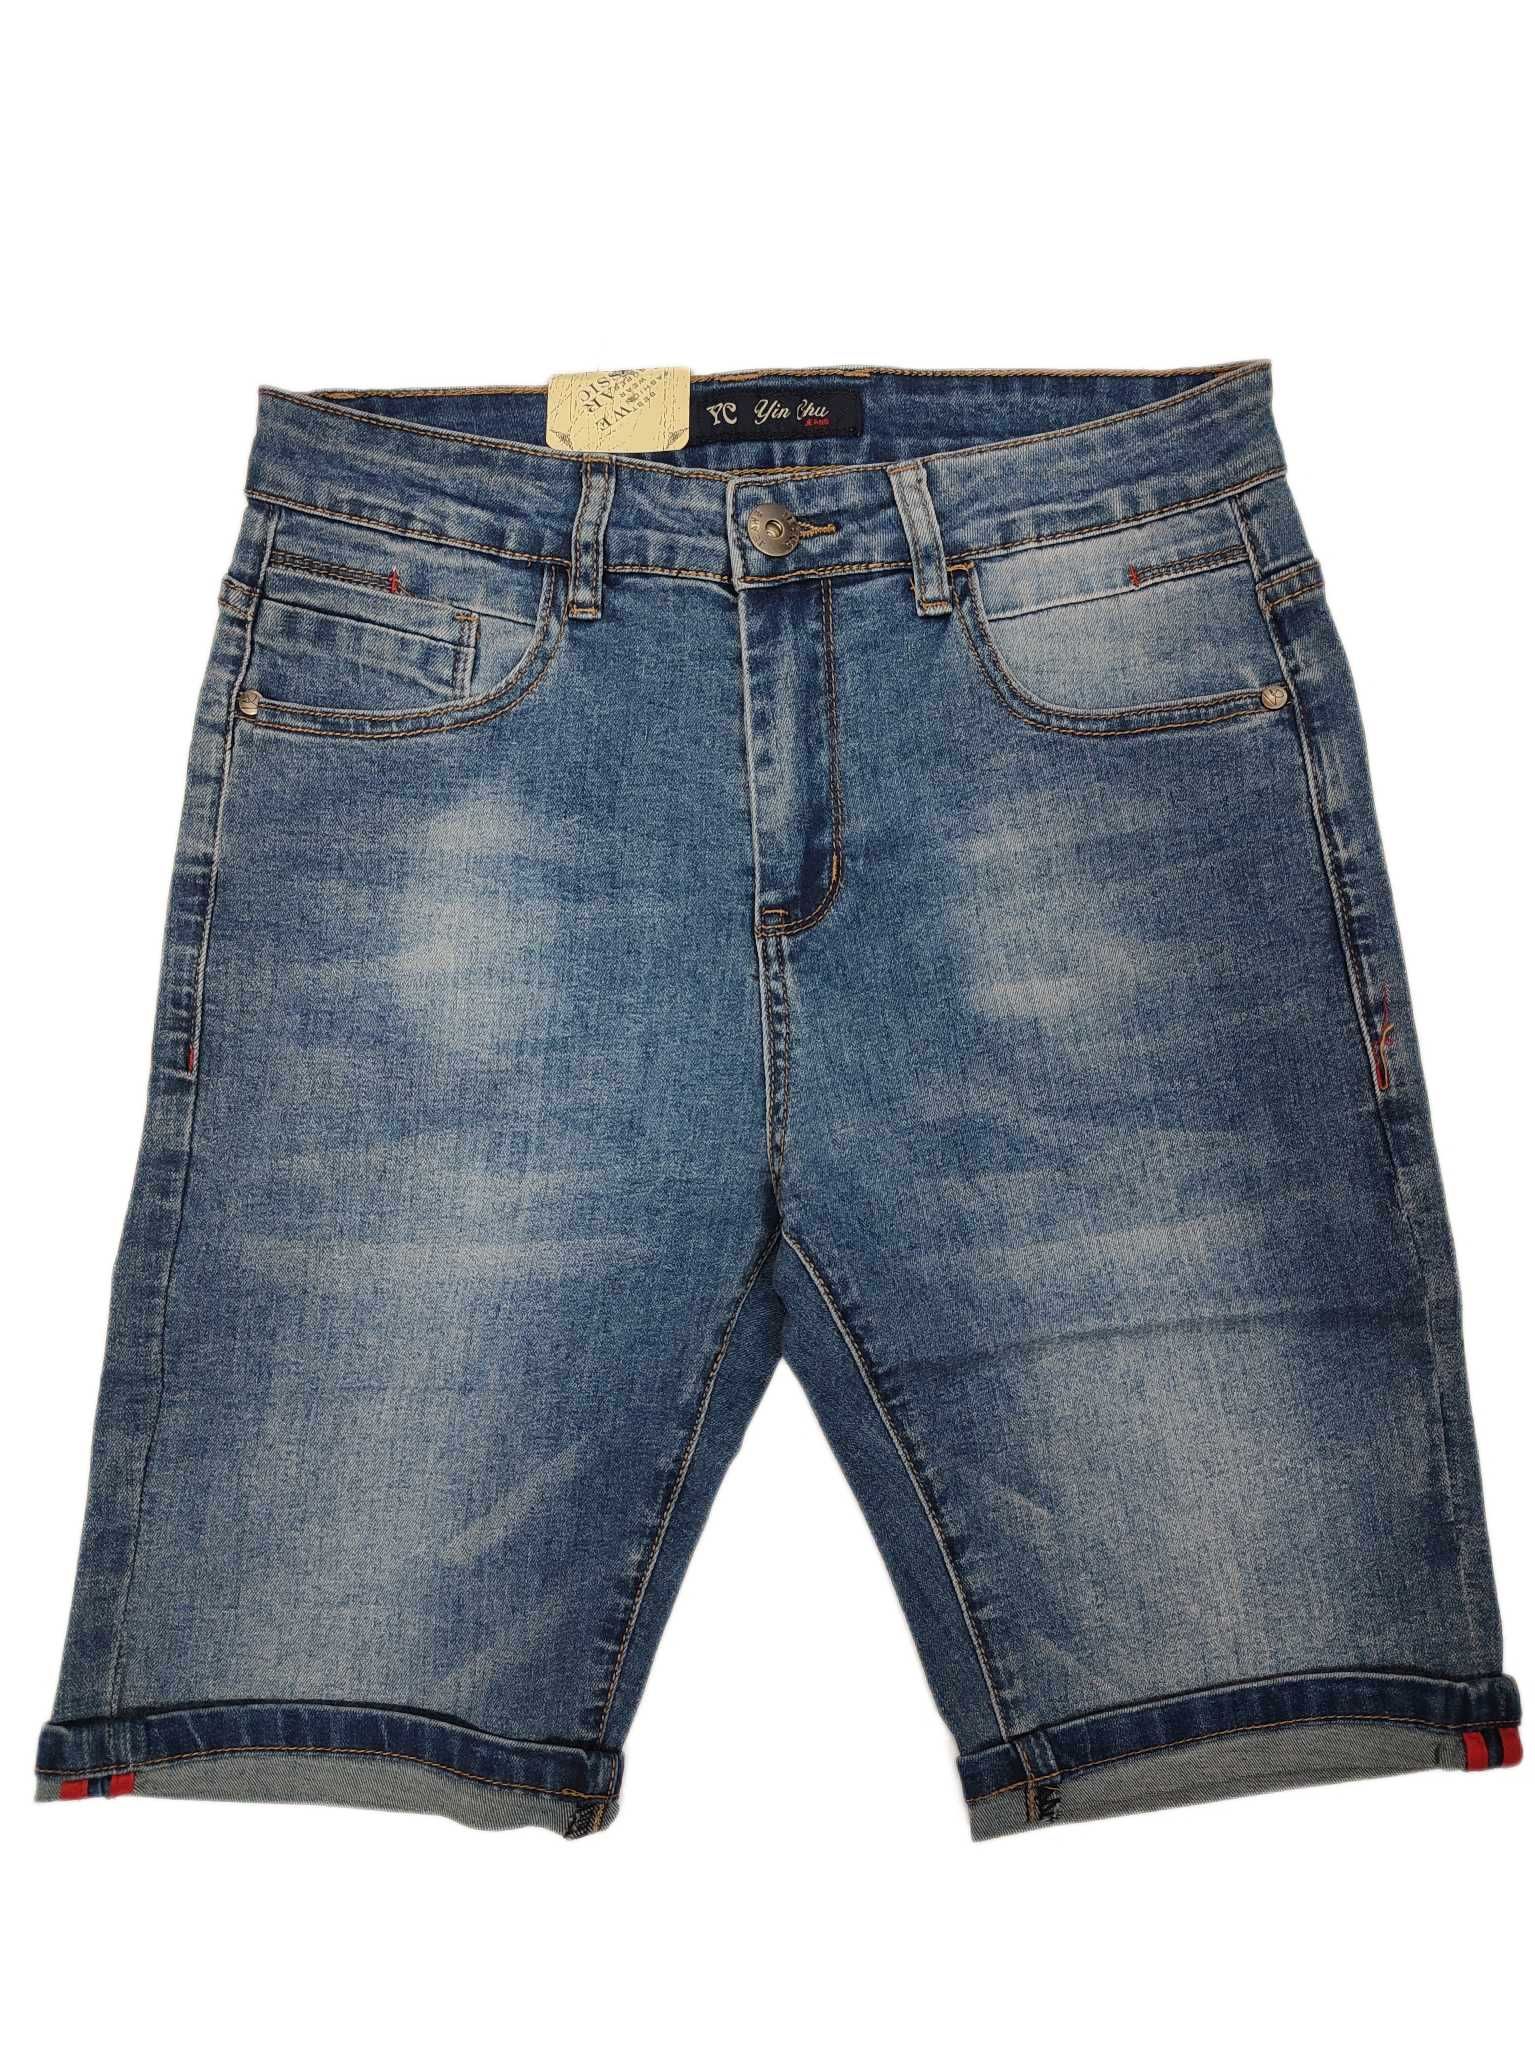 Krótkie spodenki męskie jeansowe r. W33 nr 698A